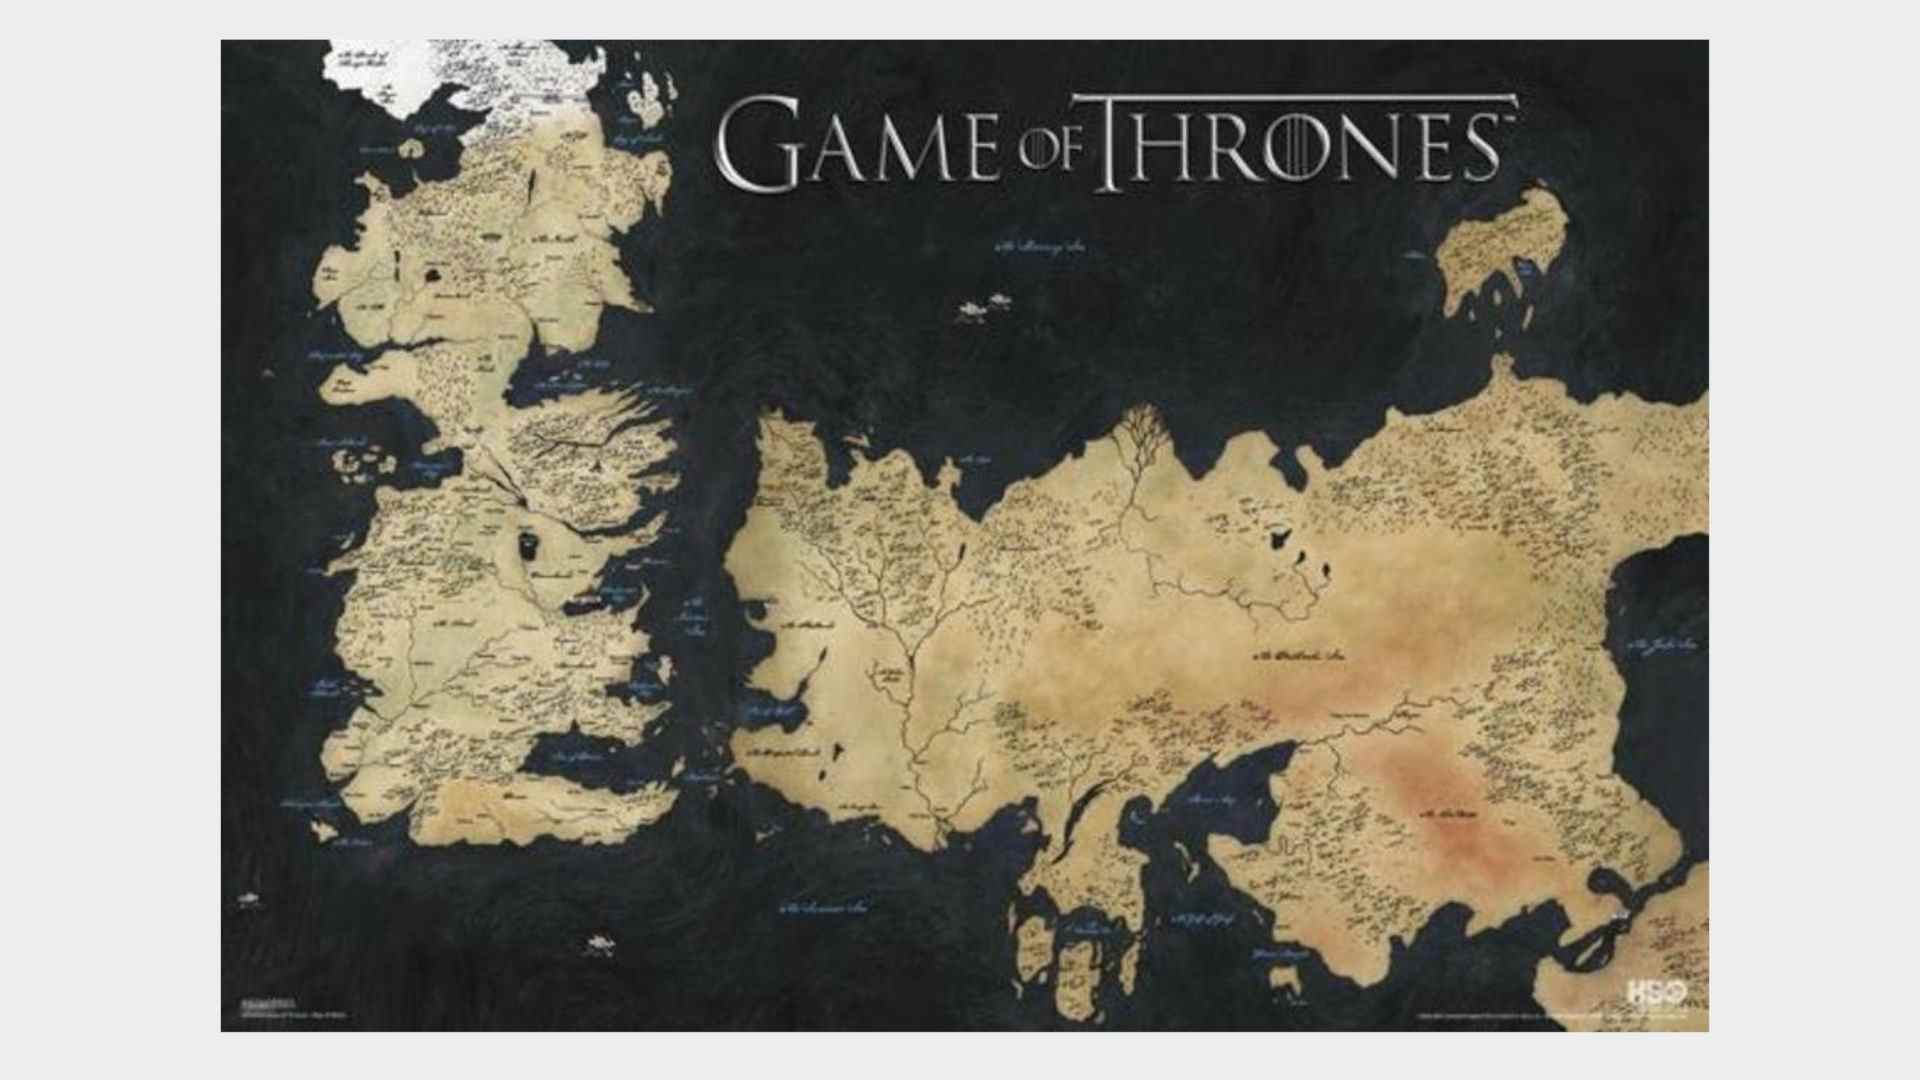 Affiche de la carte de Westeros et Essos sur fond gris